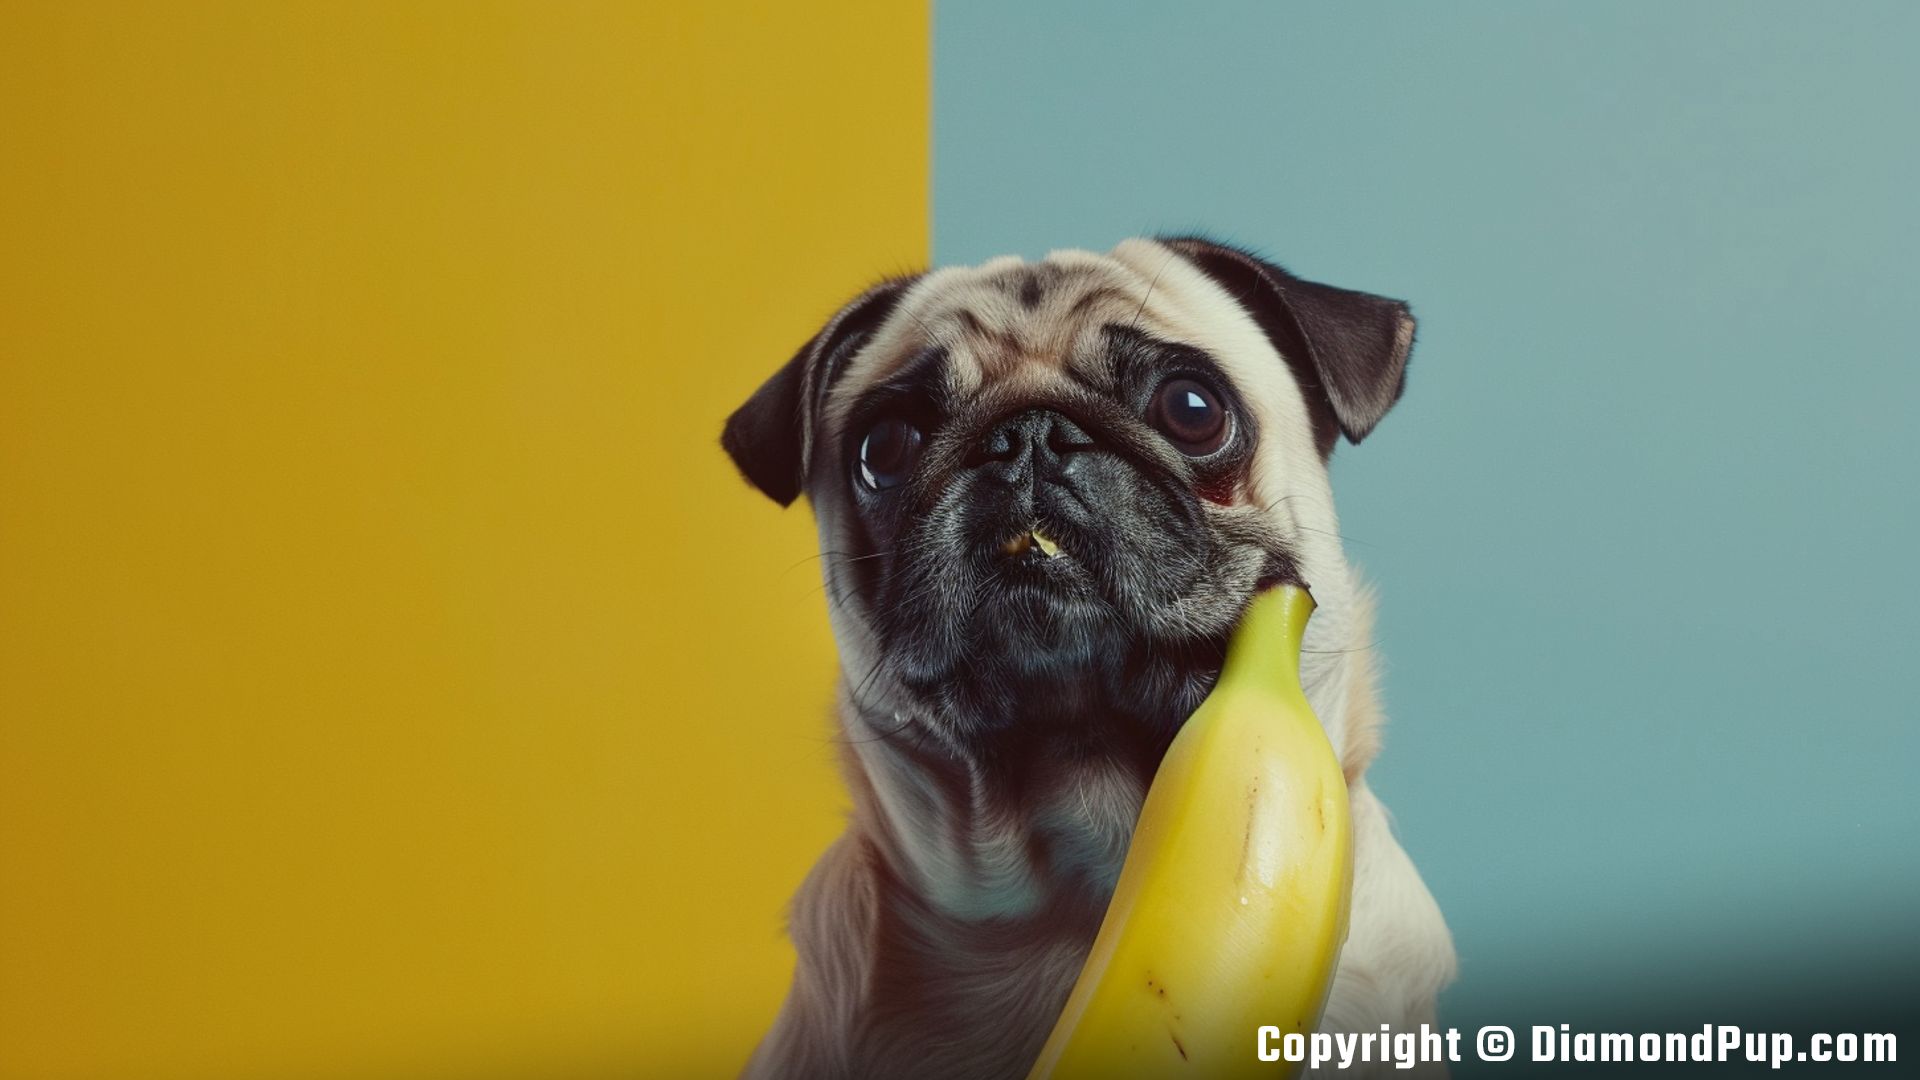 Image of a Playful Pug Eating Banana